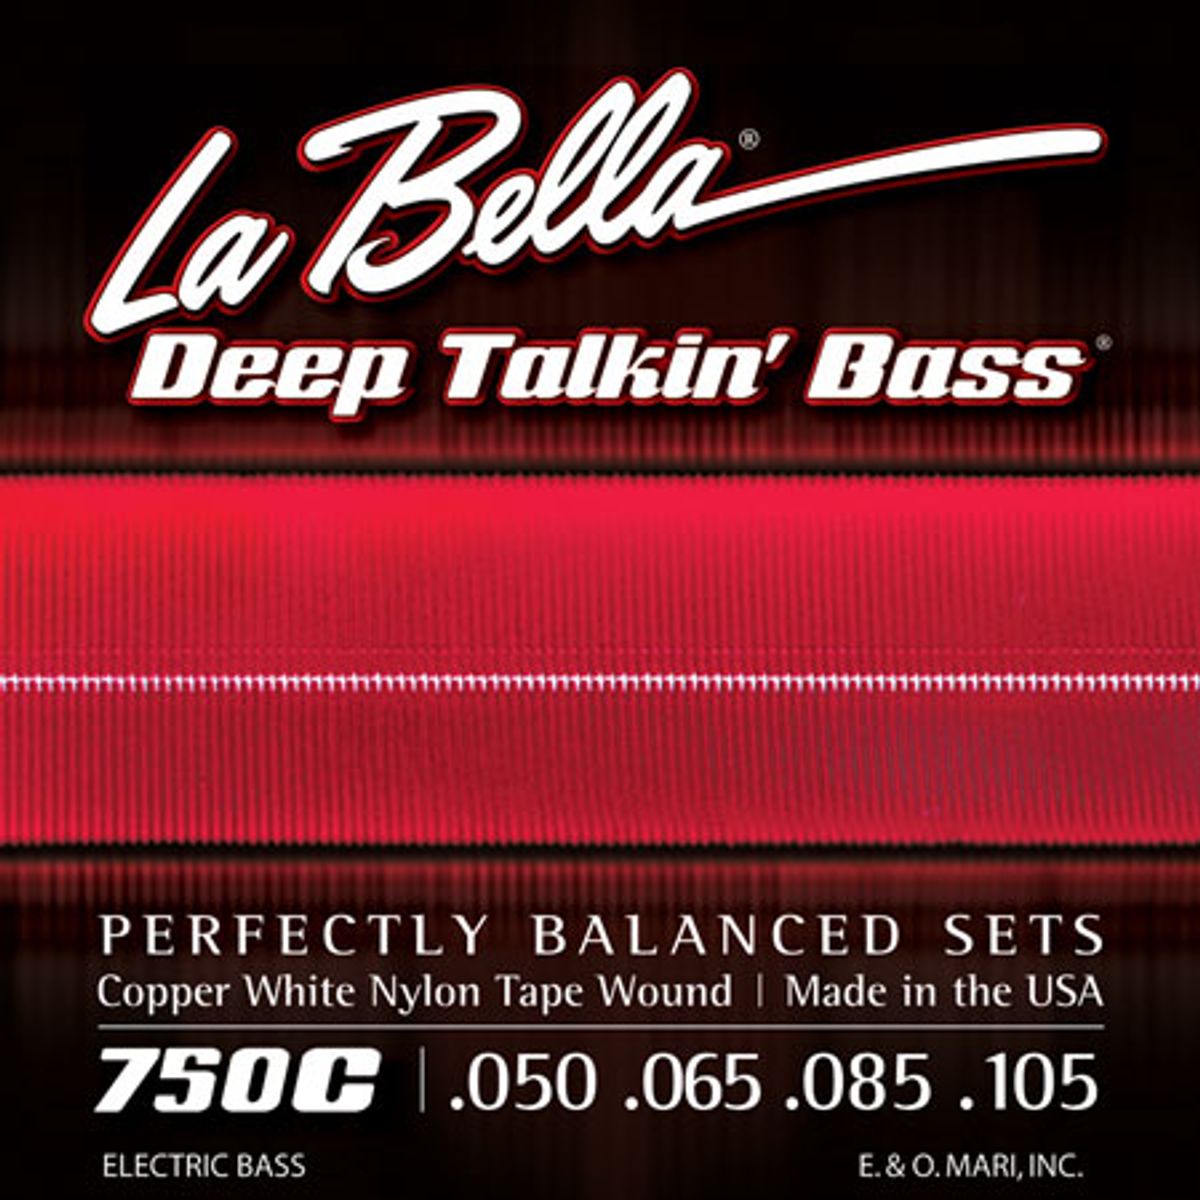 La Bella Strings Introduces the Copper White Nylon Tape Wound Series